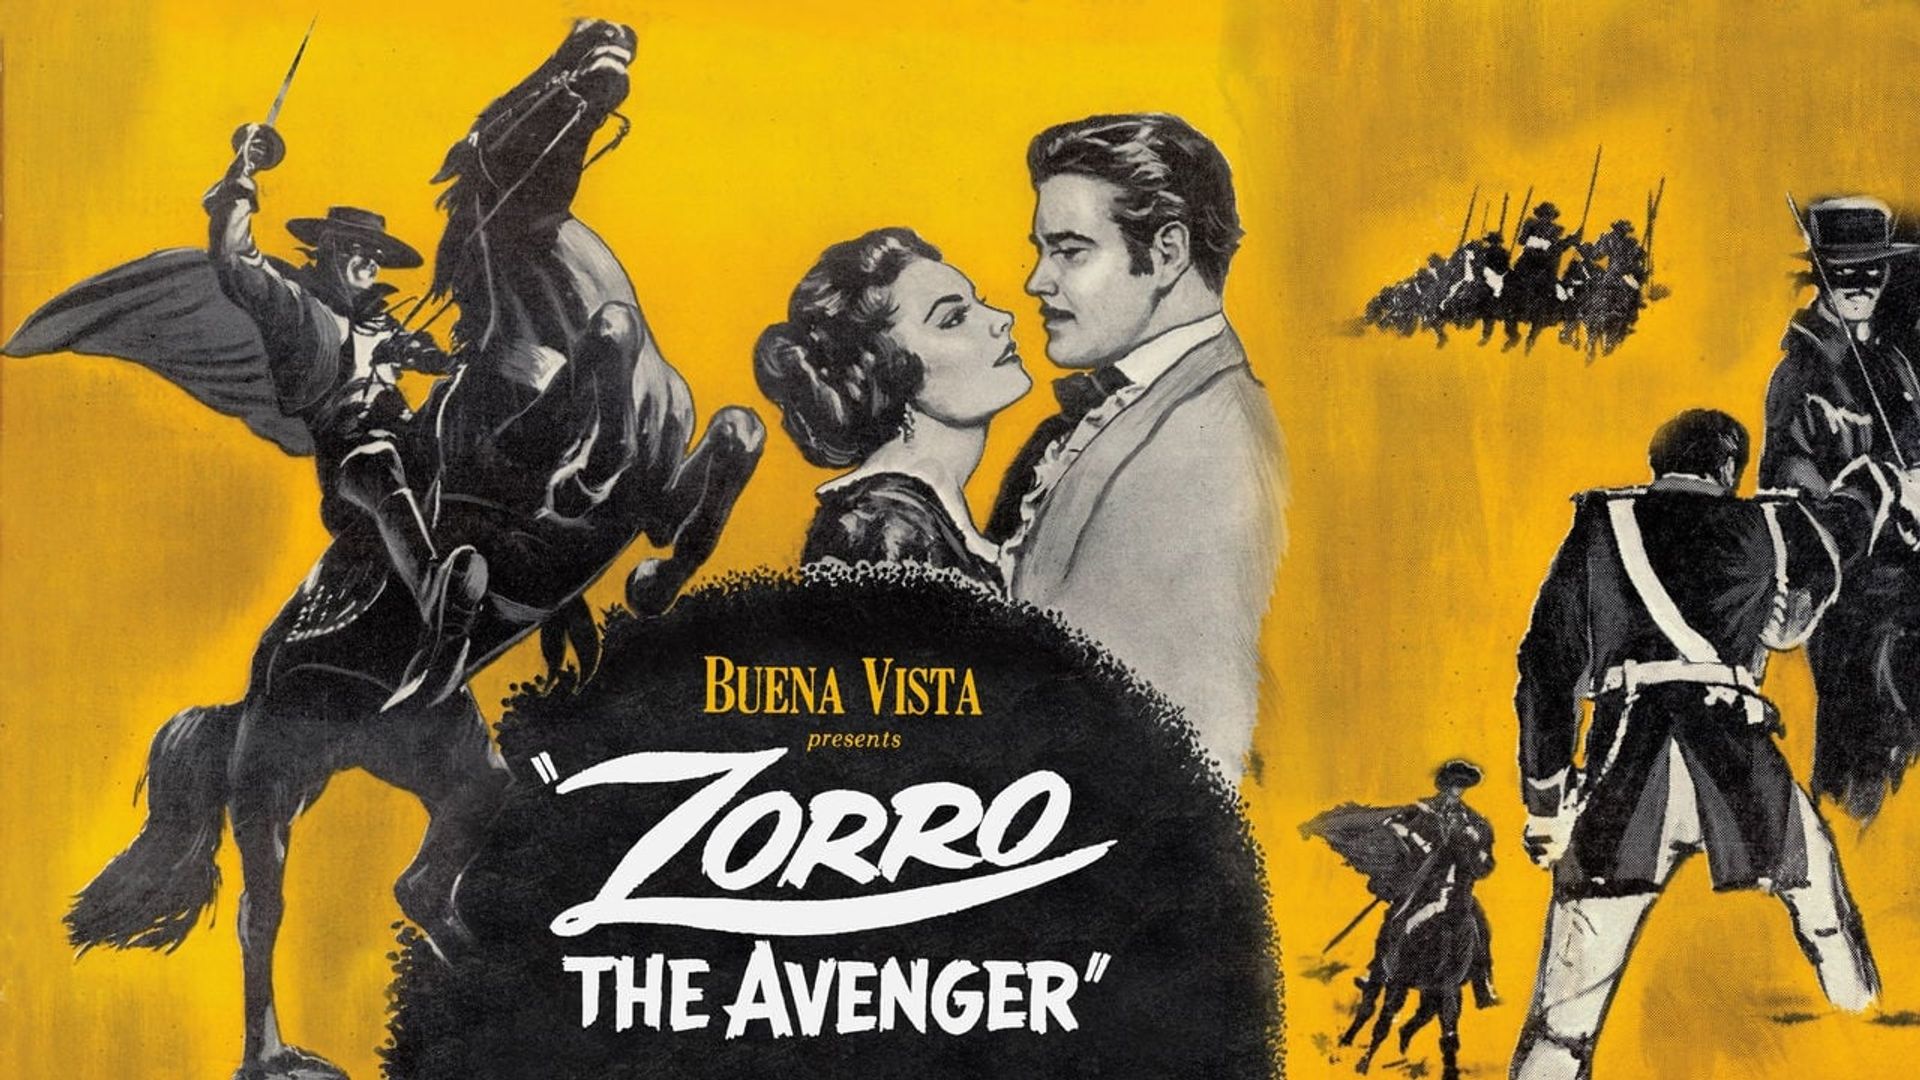 Zorro, the Avenger background